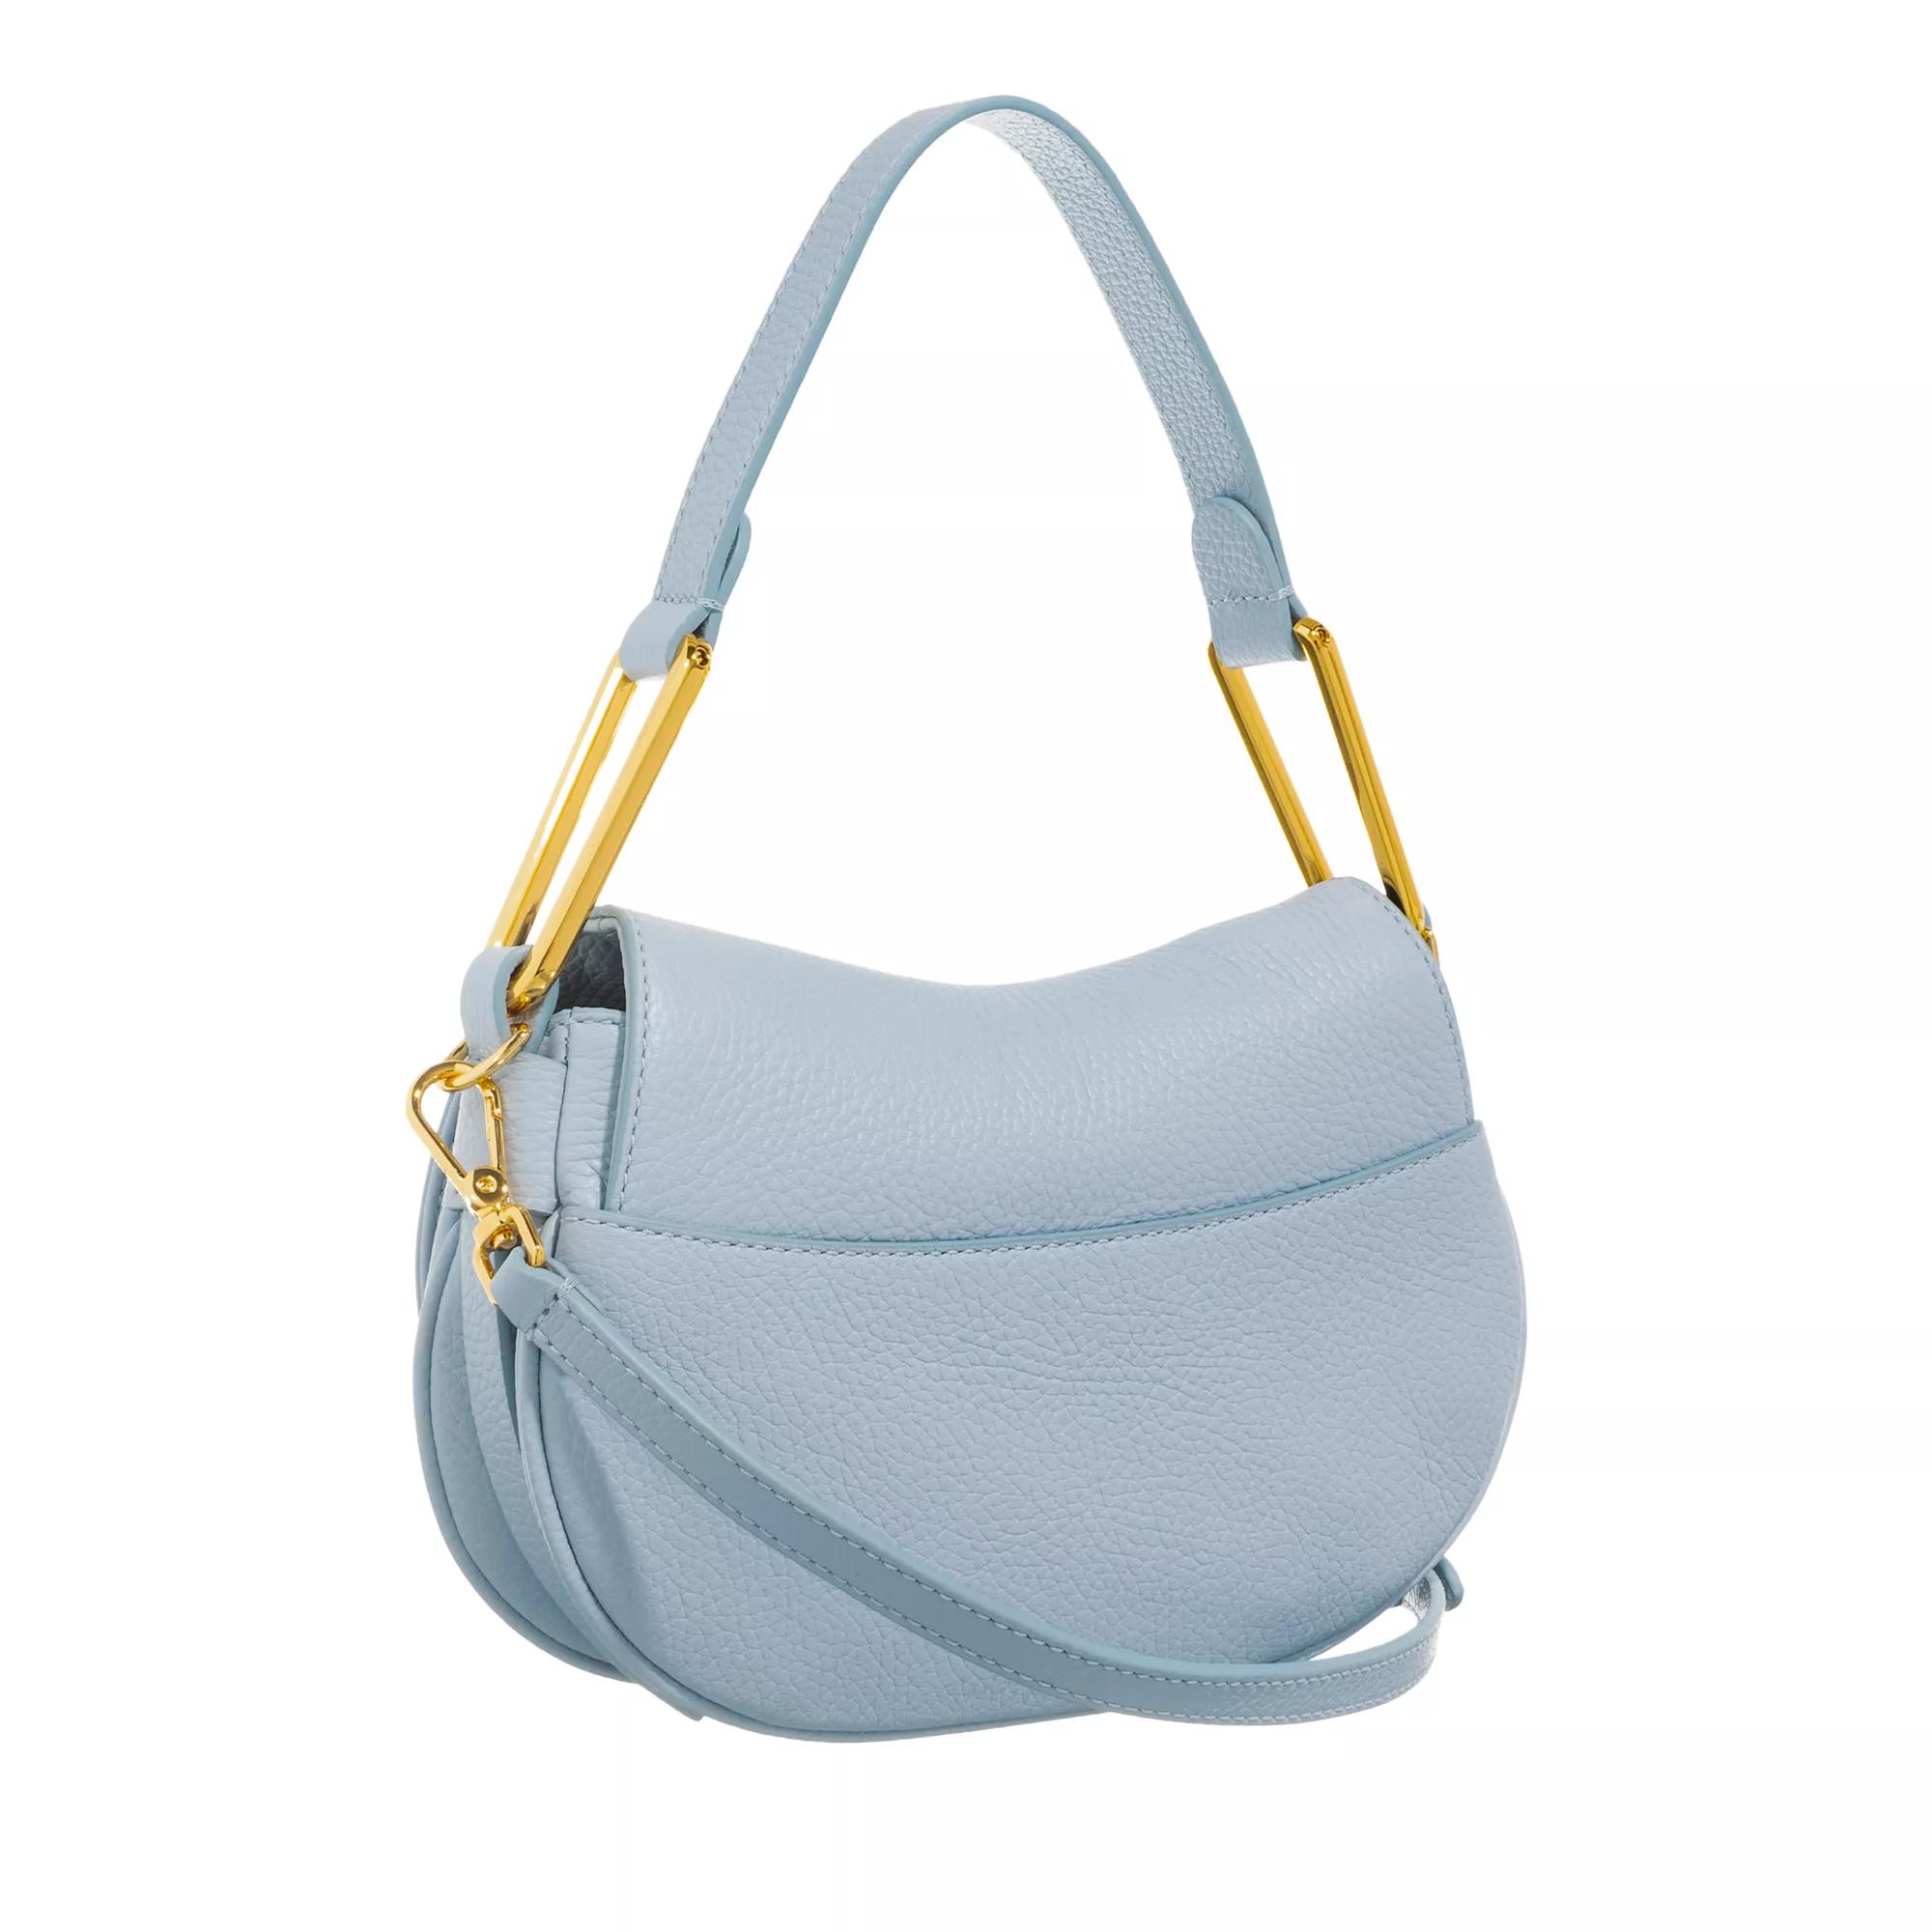 Coccinelle Satchels Magie Soft Handbag in blauw